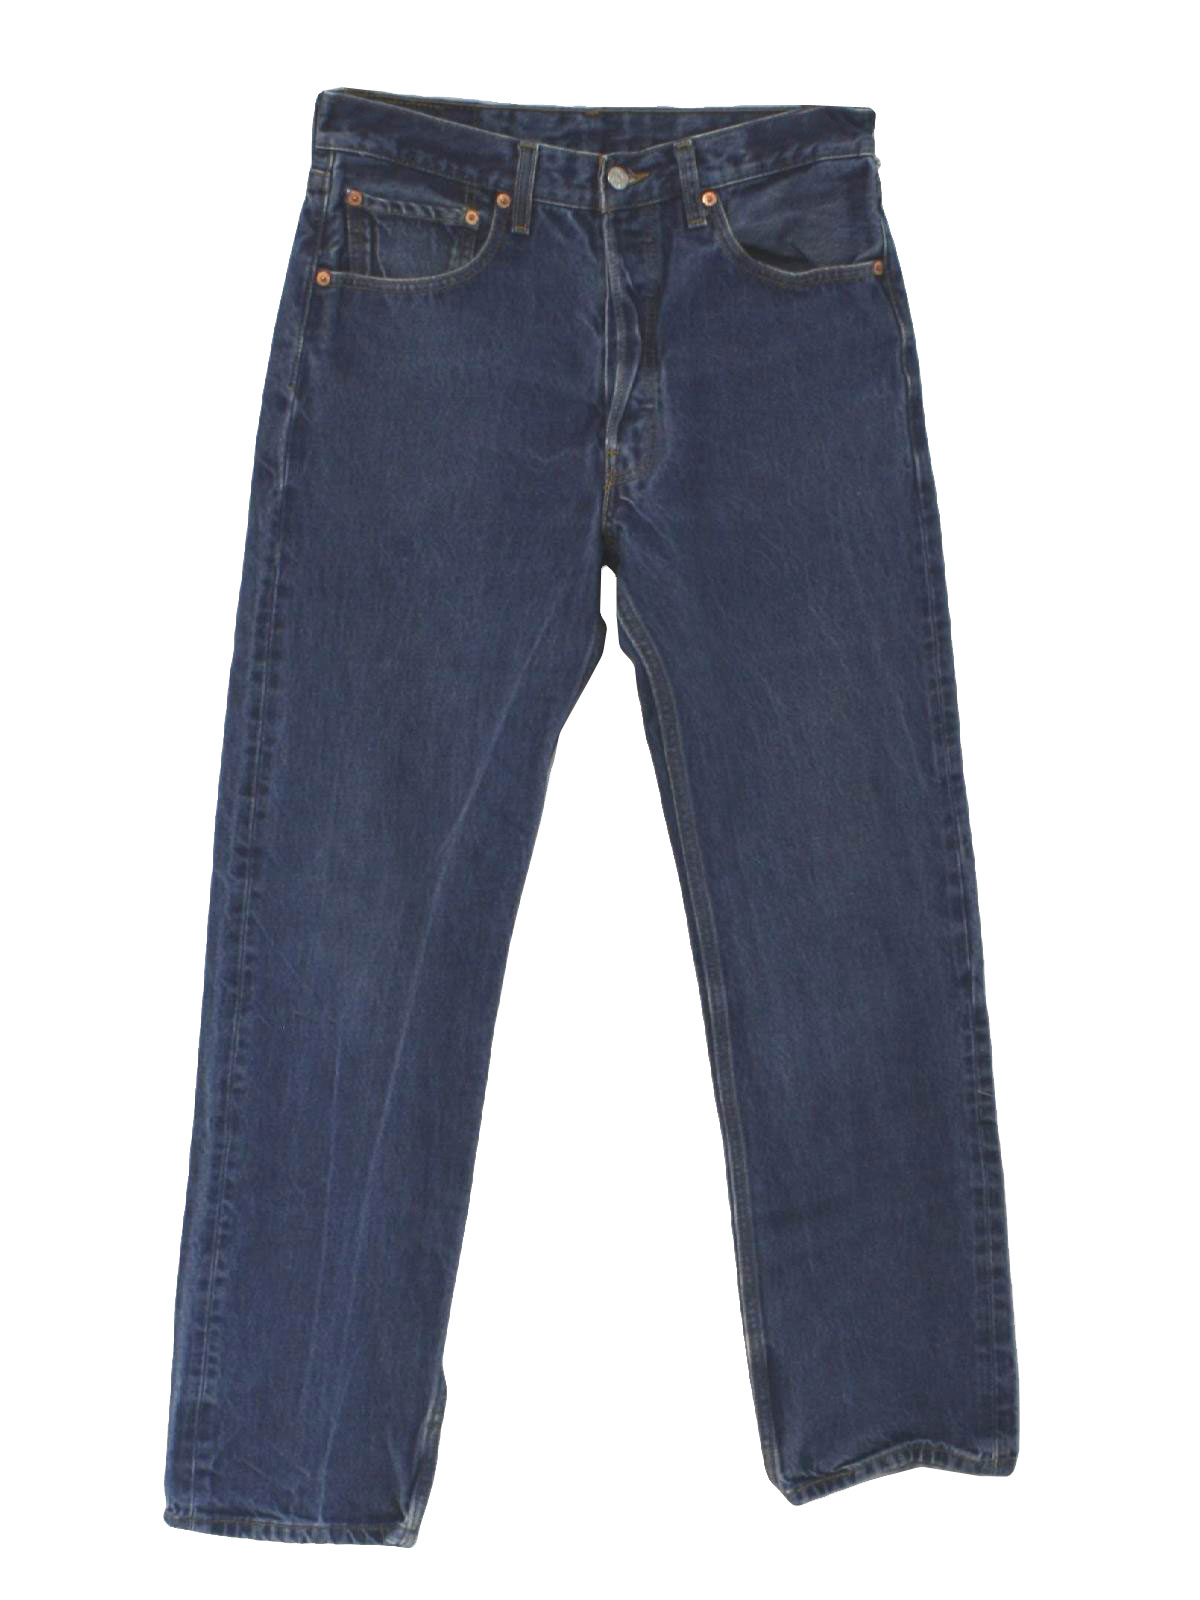 Retro 1990's Pants (Levis 501) : 90s -Levis 501- Mens well worn blue ...